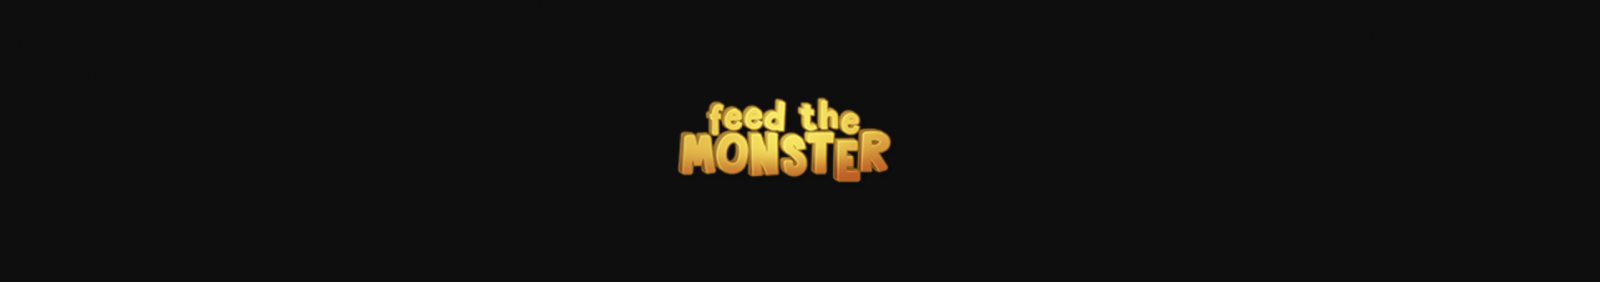 Immagine del logo della app Feed The Monster